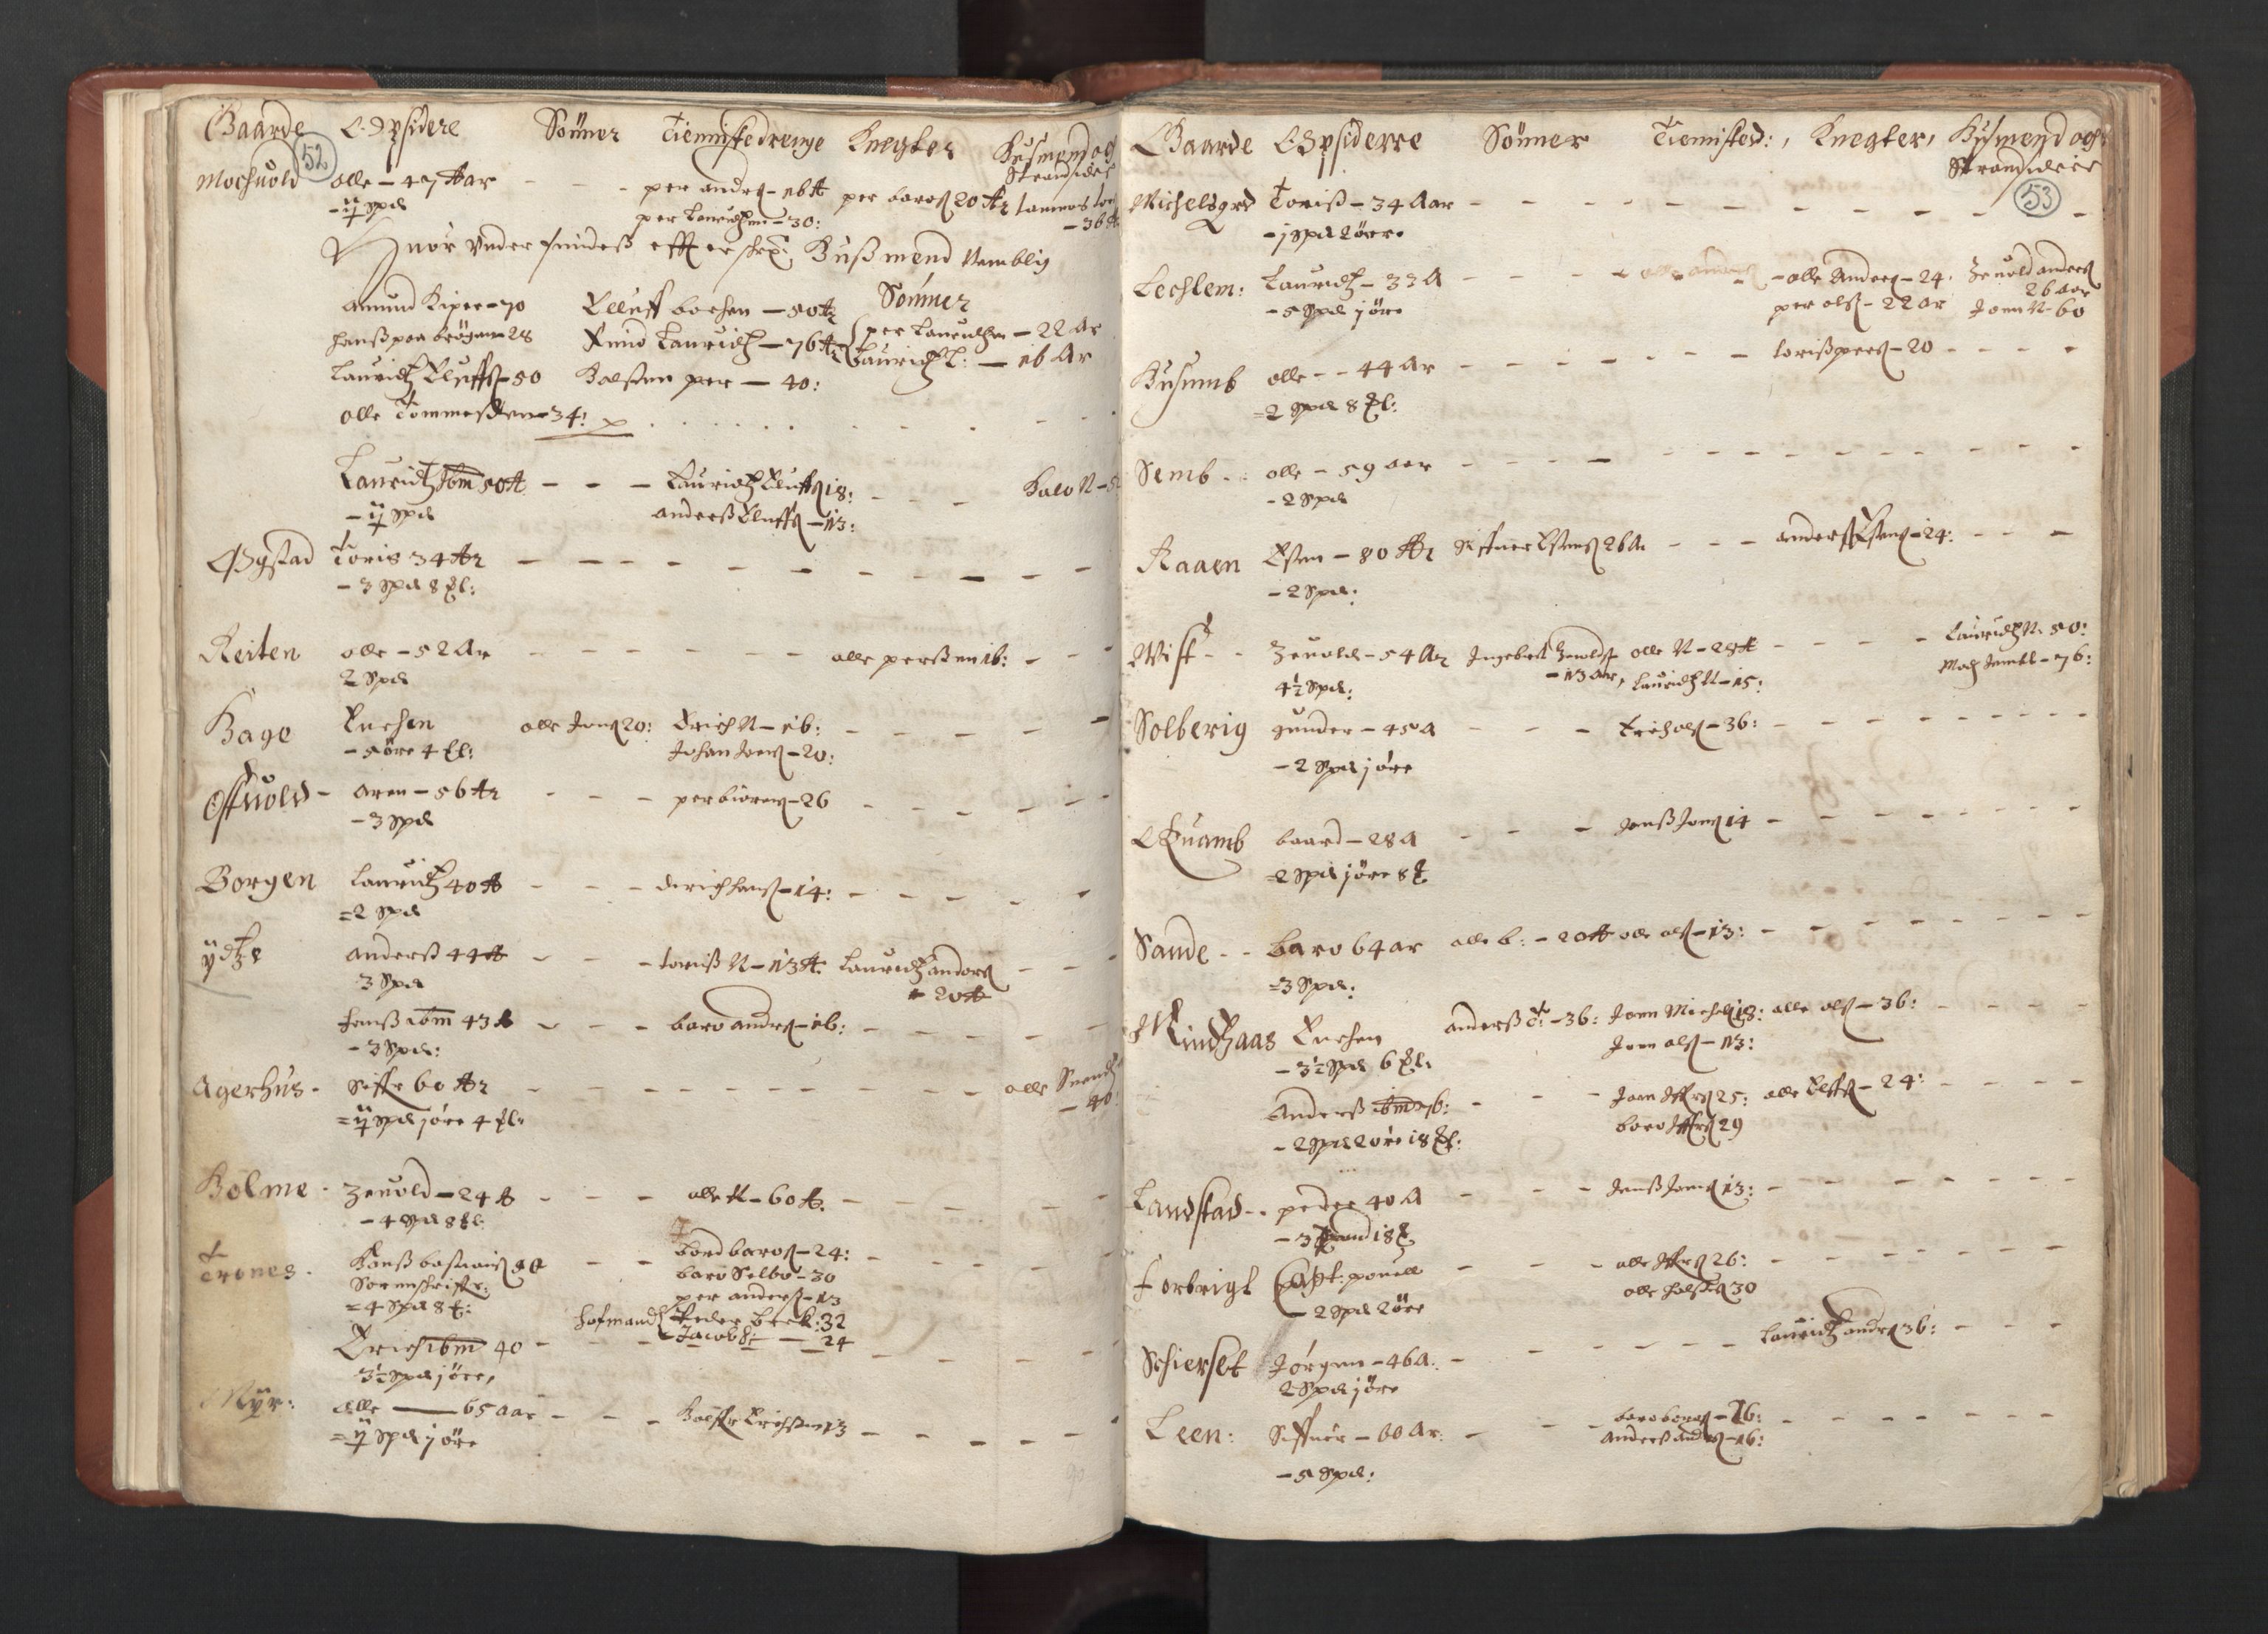 RA, Fogdenes og sorenskrivernes manntall 1664-1666, nr. 19: Fosen fogderi, Inderøy fogderi, Selbu fogderi, Namdal fogderi og Stjørdal fogderi, 1664-1665, s. 52-53